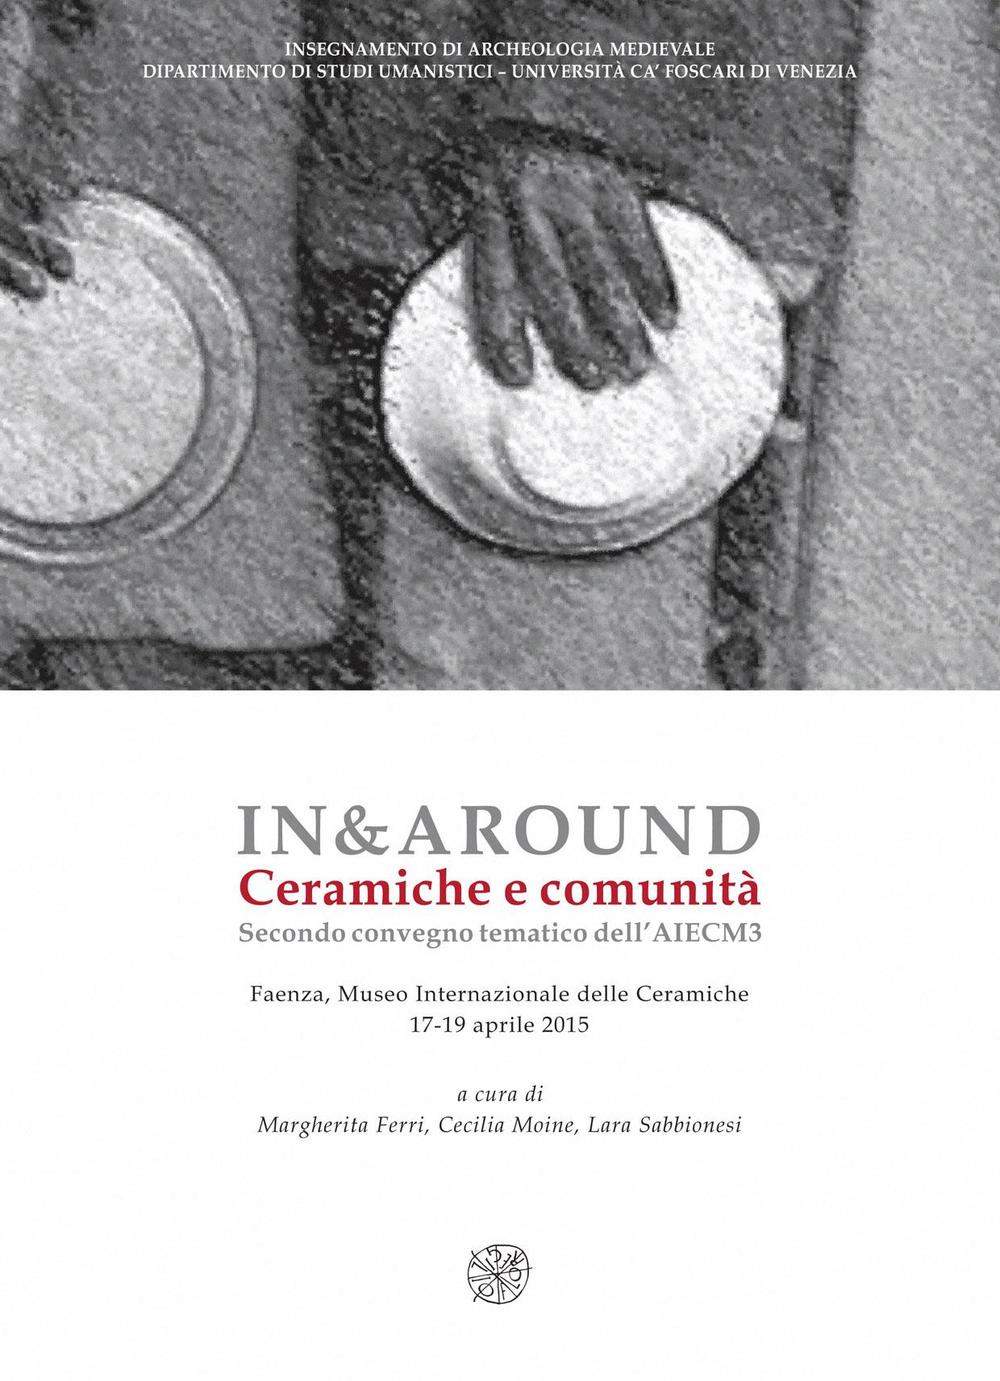 In&around. Ceramicge e comunità. Secondo Convegno tematico dell'AIECM3. Ediz. italiana, inglese e greca